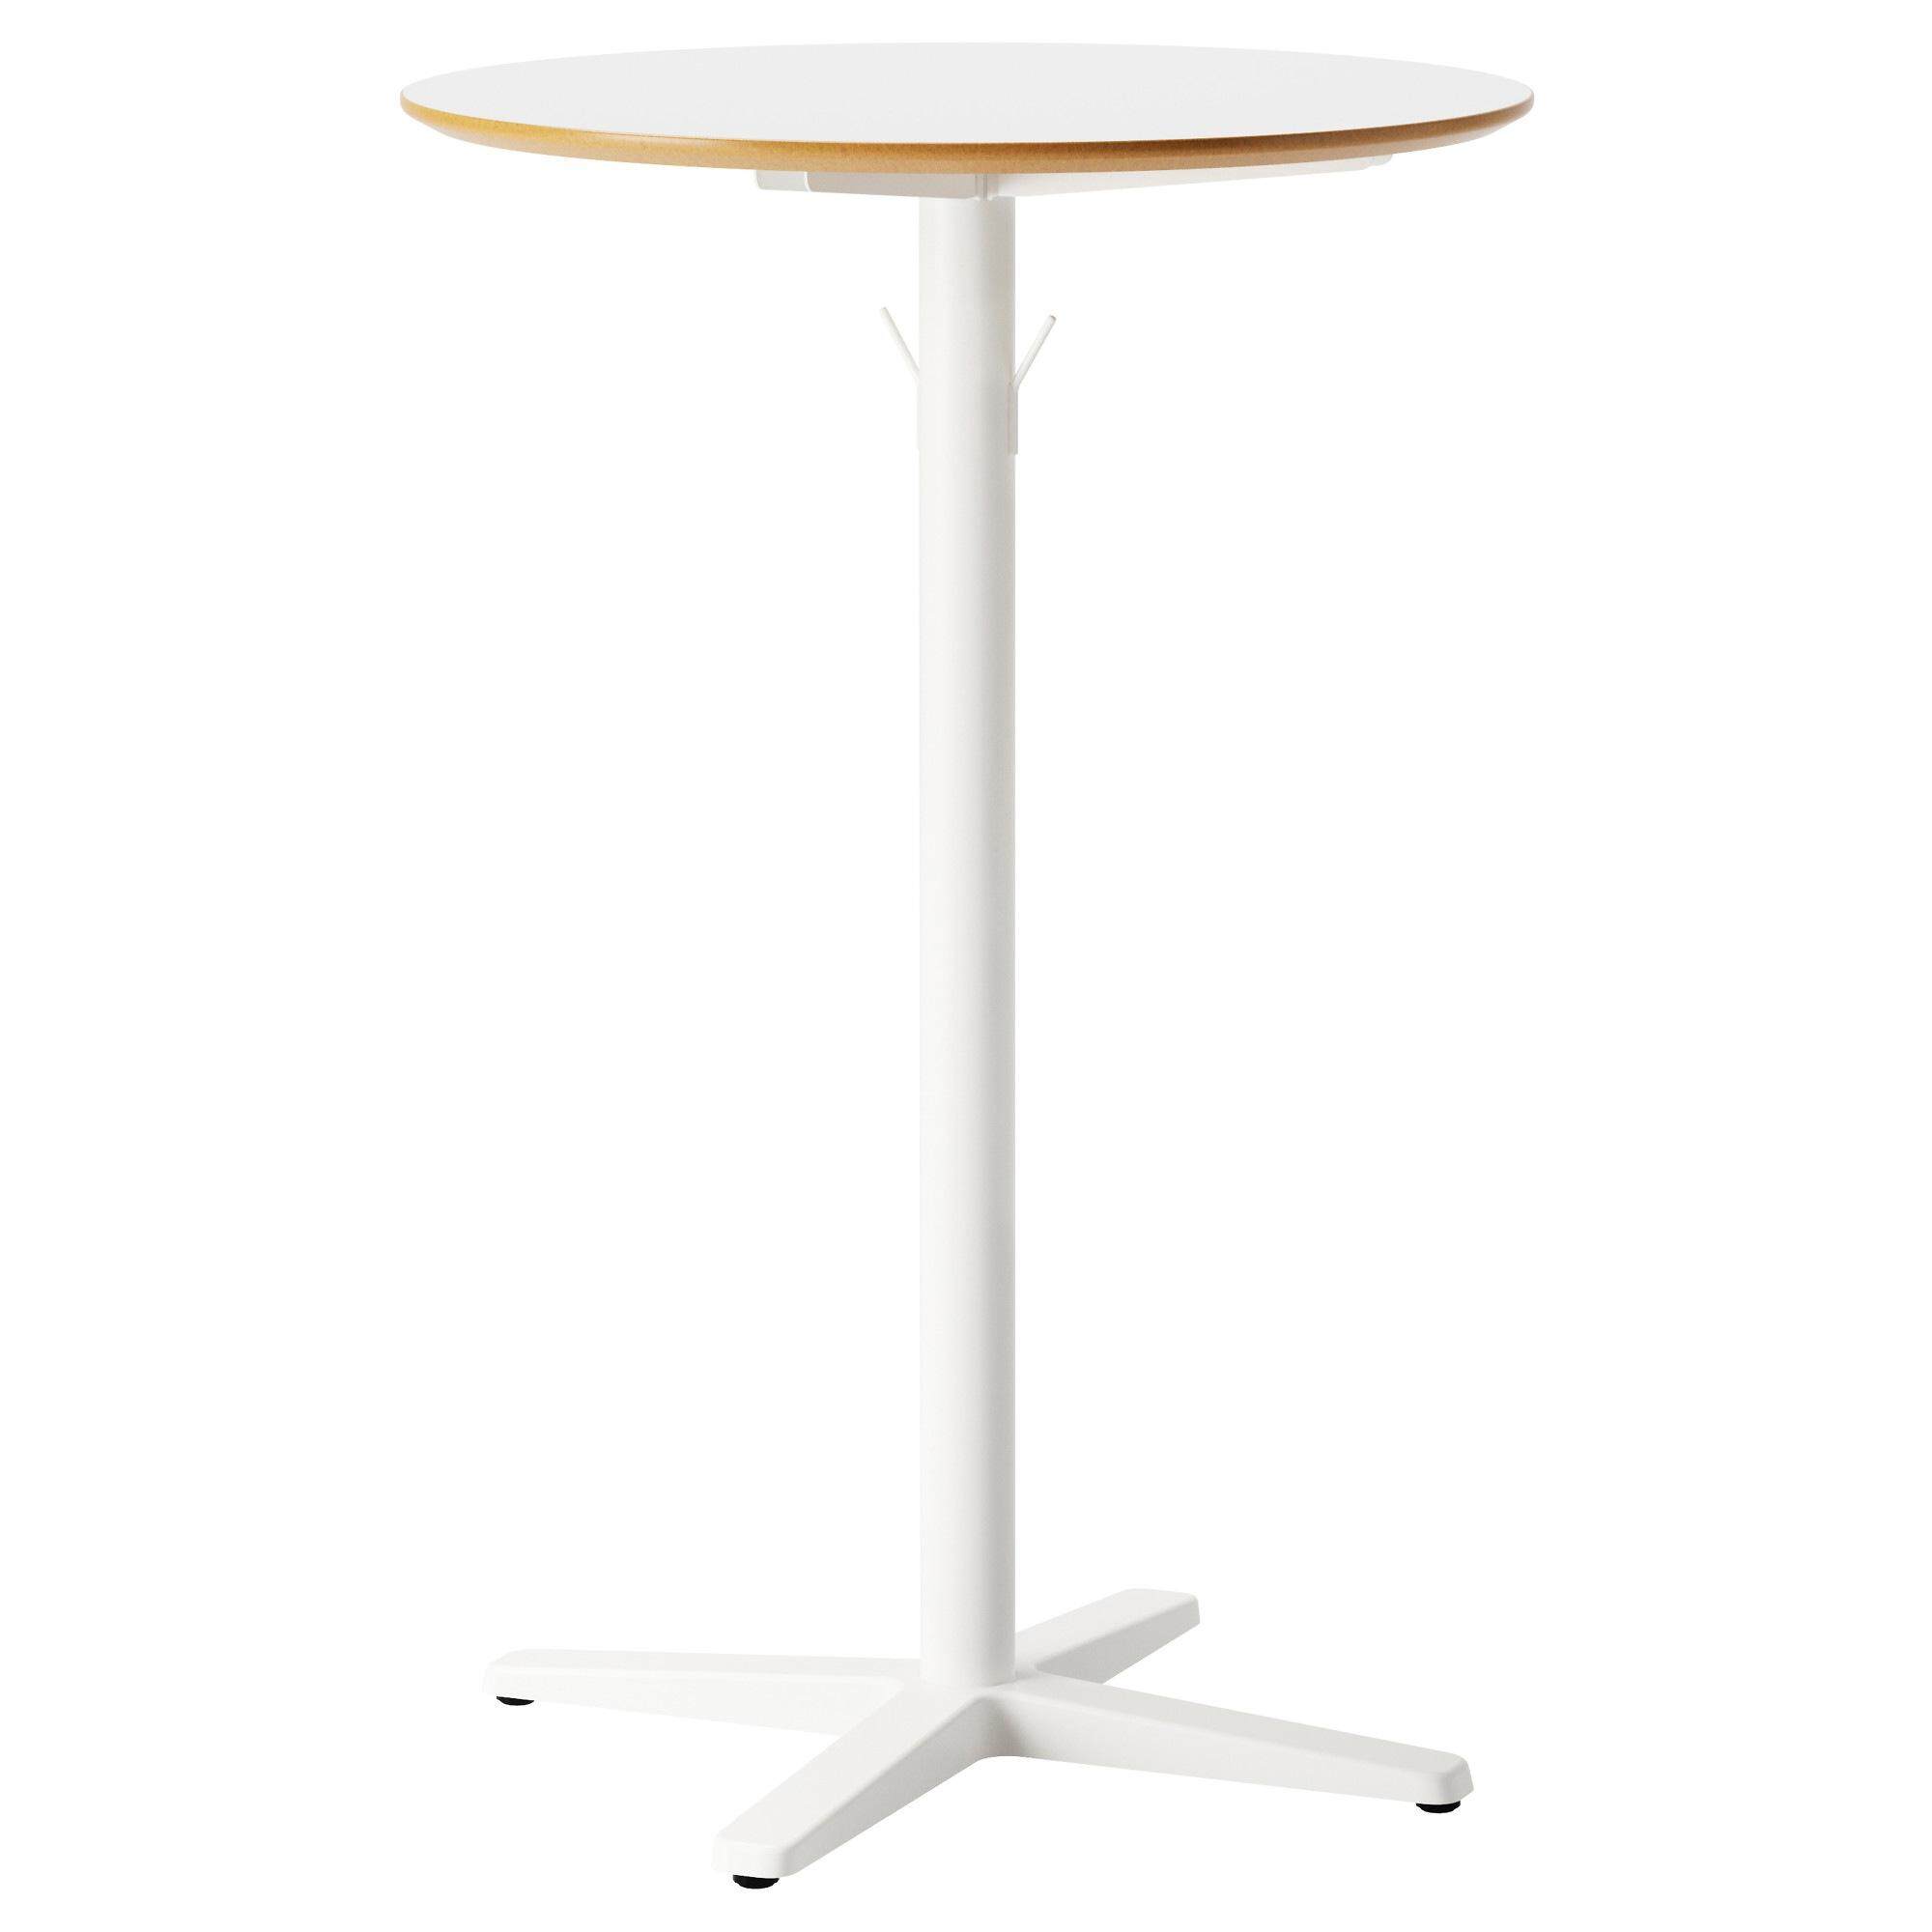 [ด่วน!! โปรโมชั่นมีจำนวนจำกัด] โต๊ะบาร์, ขาว, ขาว ขนาด 70 ซม. โต๊ะบาร์ BILLSTA ขนาด 70 ซม.